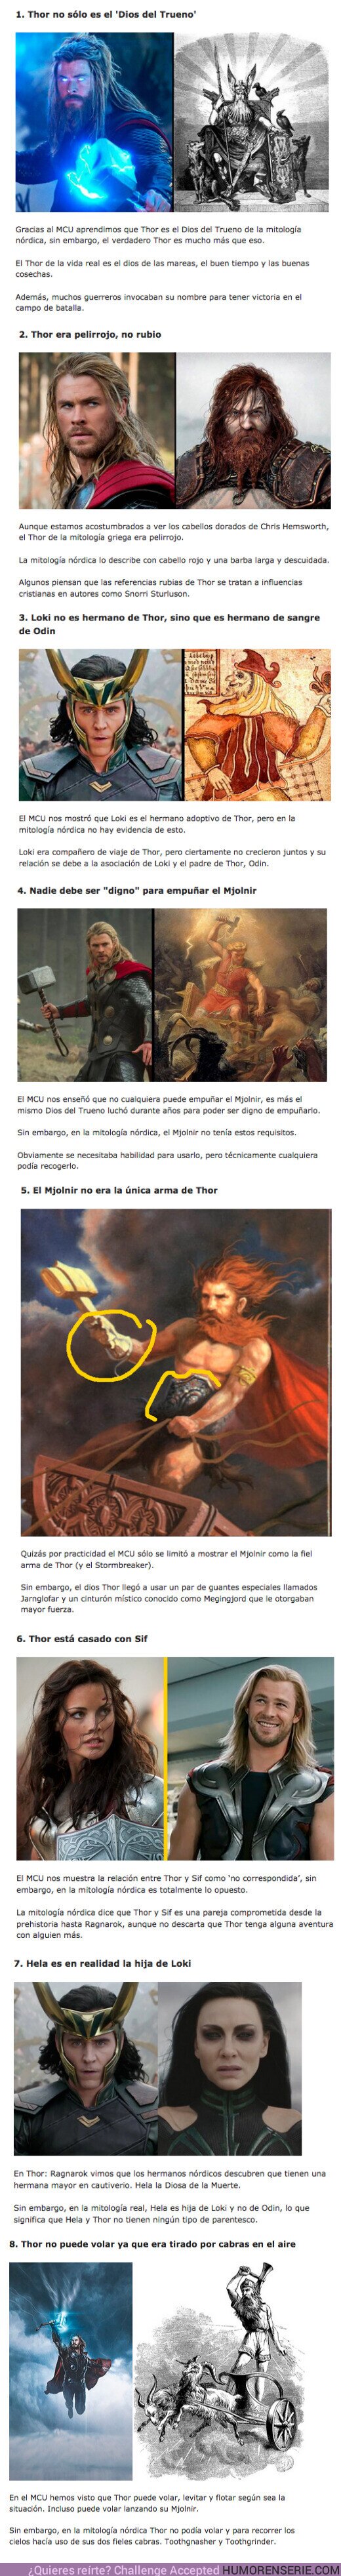 84989 - GALERÍA: 8 Diferencias entre el Thor del las pelis de Marvel y el Thor de la Mitología Nórdica